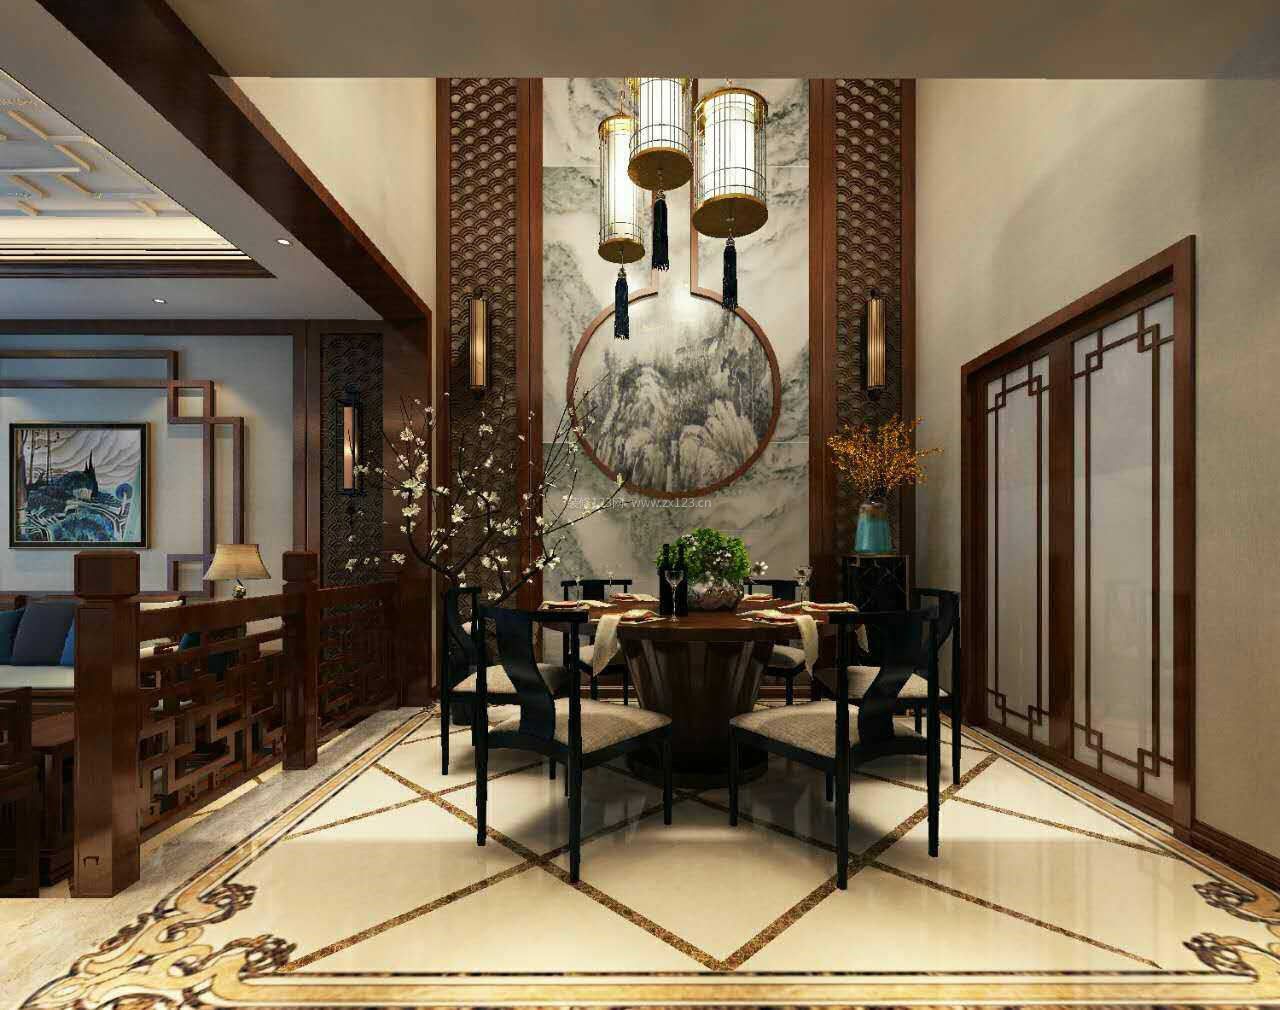 中式家庭餐厅圆餐桌装修效果图片2017